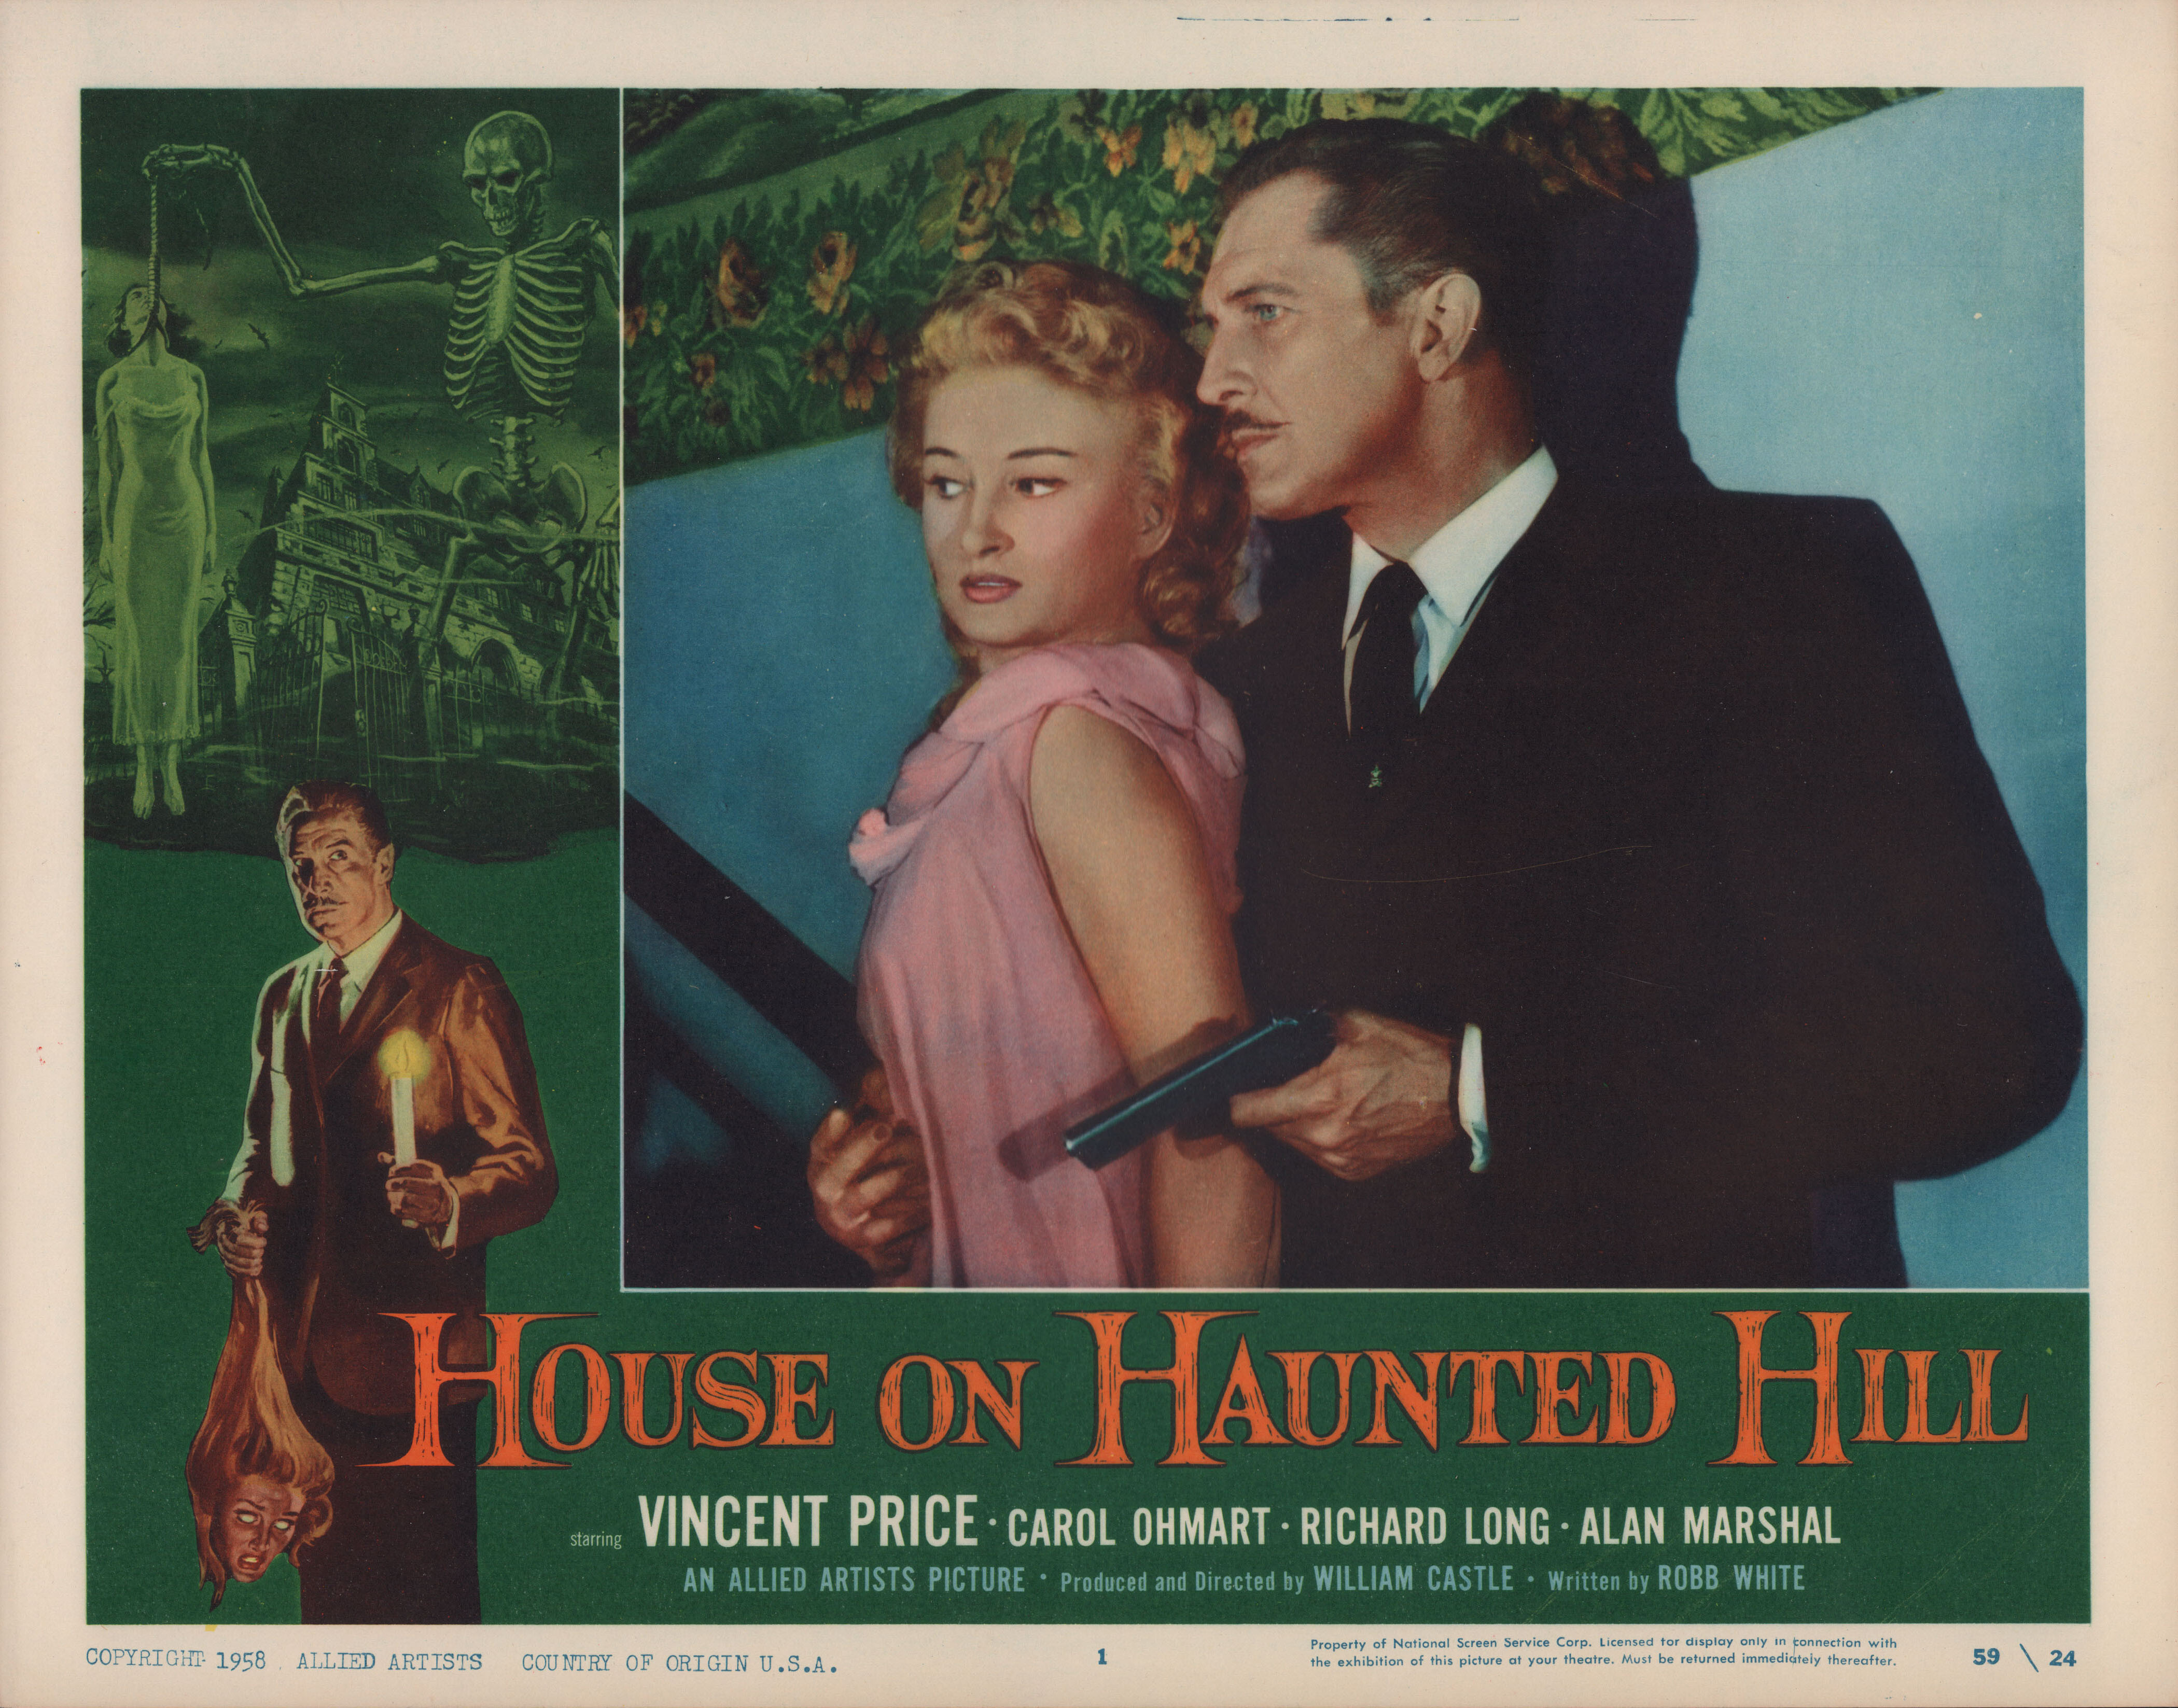 Дом ночных призраков (House on Haunted Hill, 1959), режиссёр Уильям Касл, американский постер к фильму (ужасы, 1959 год)